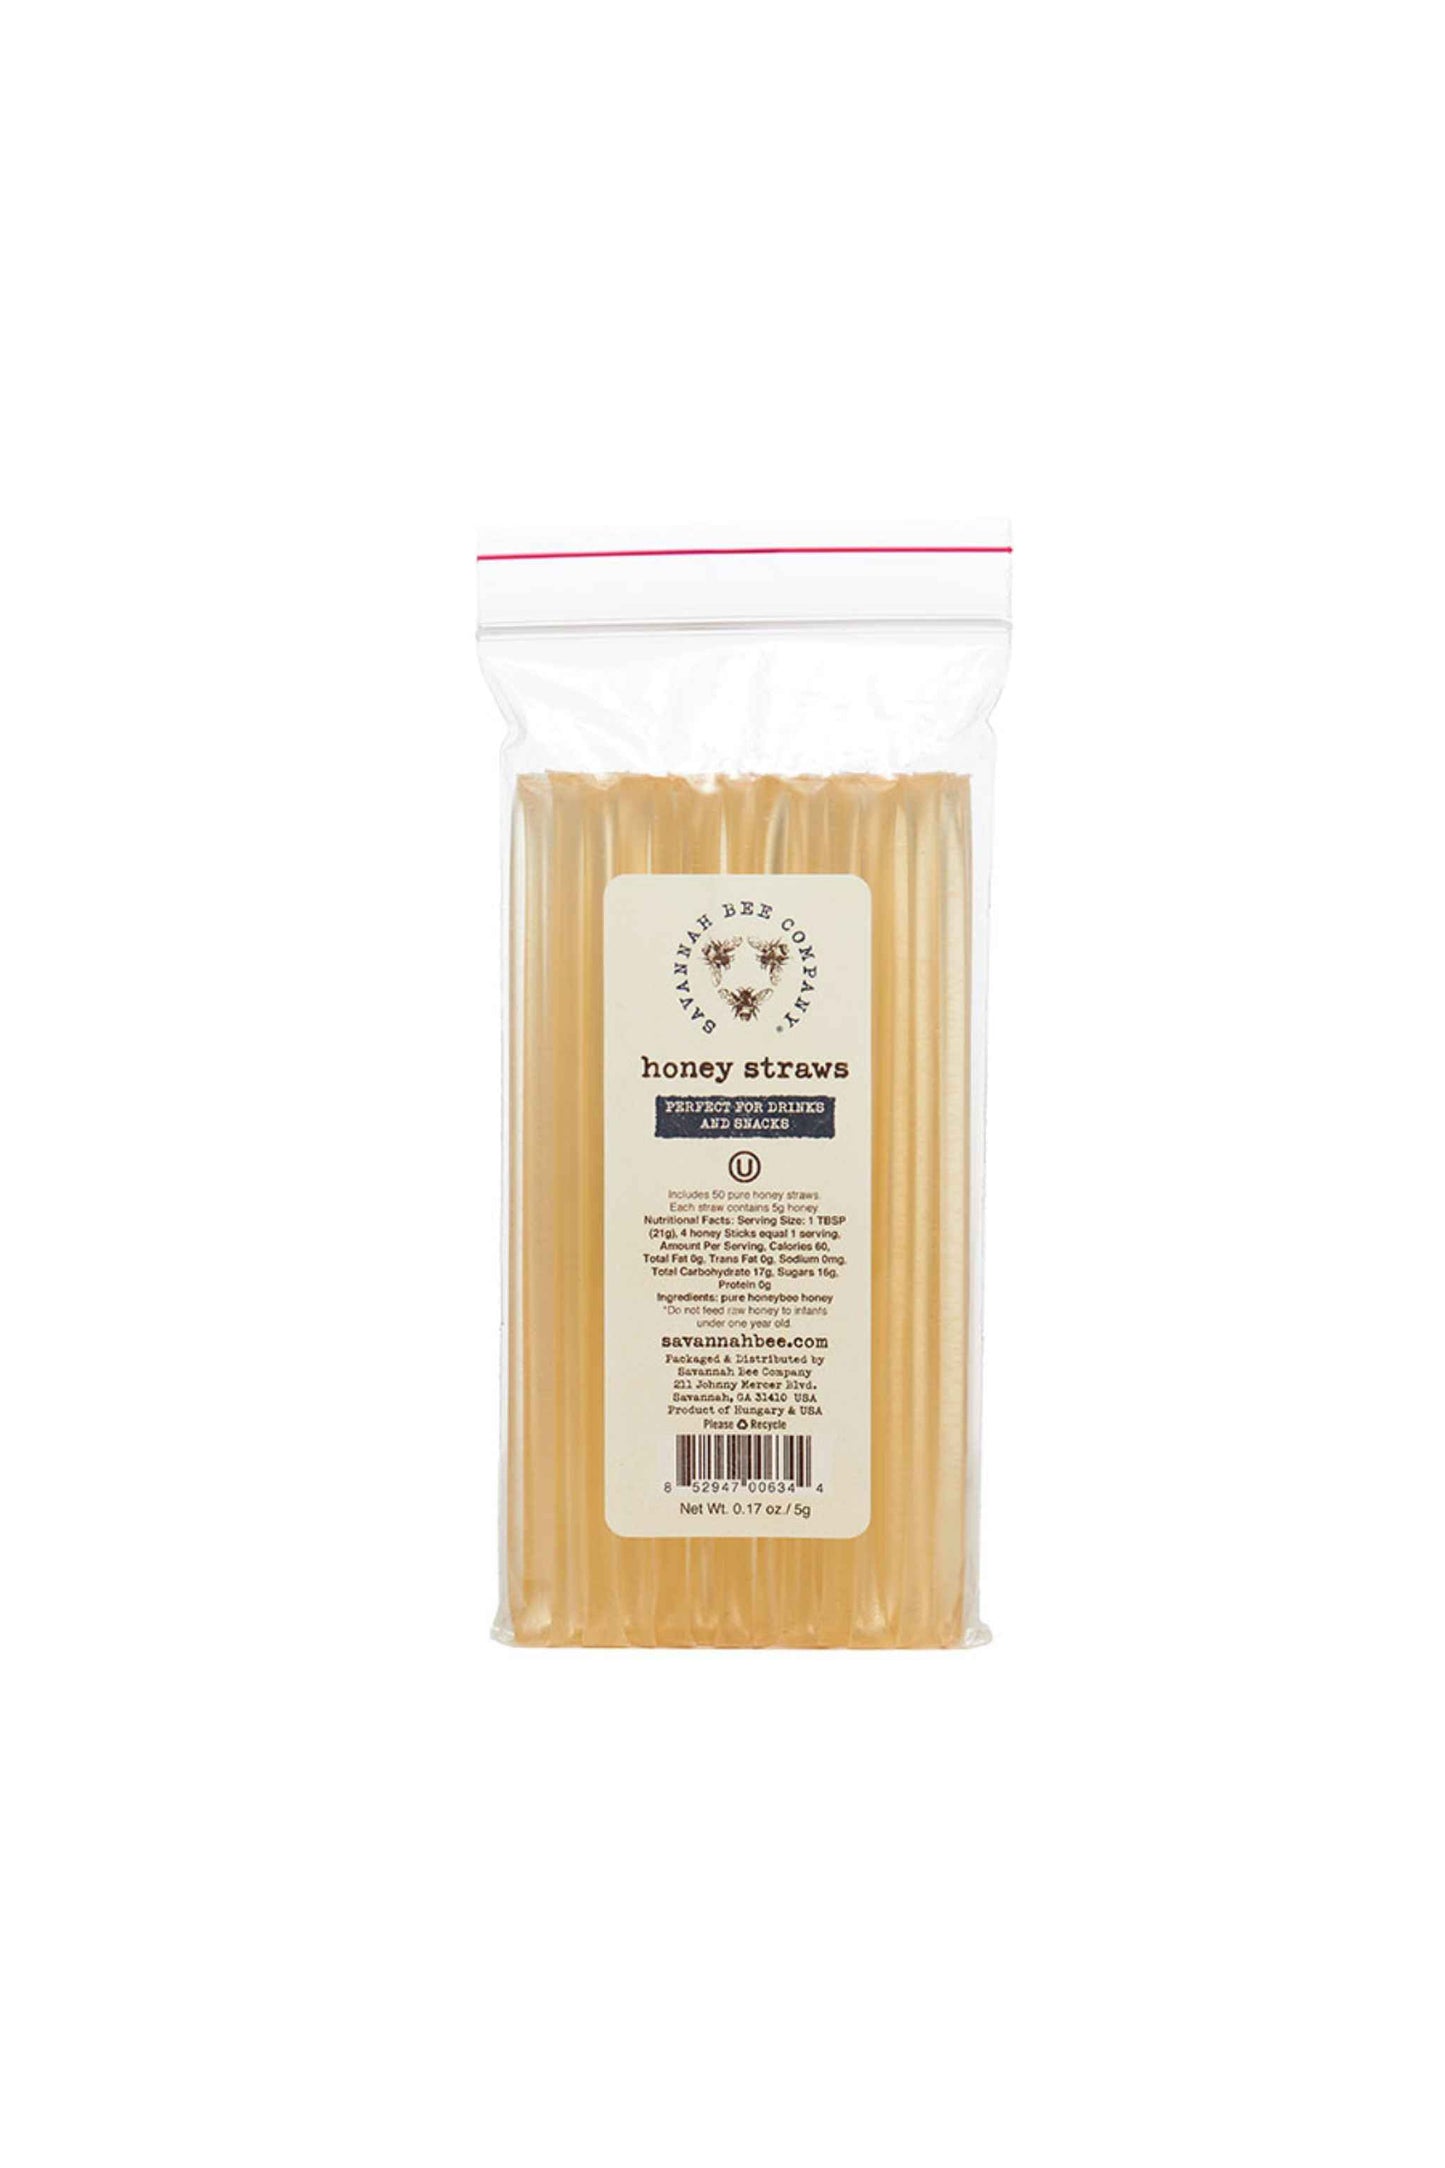 Honey straws bulk pack